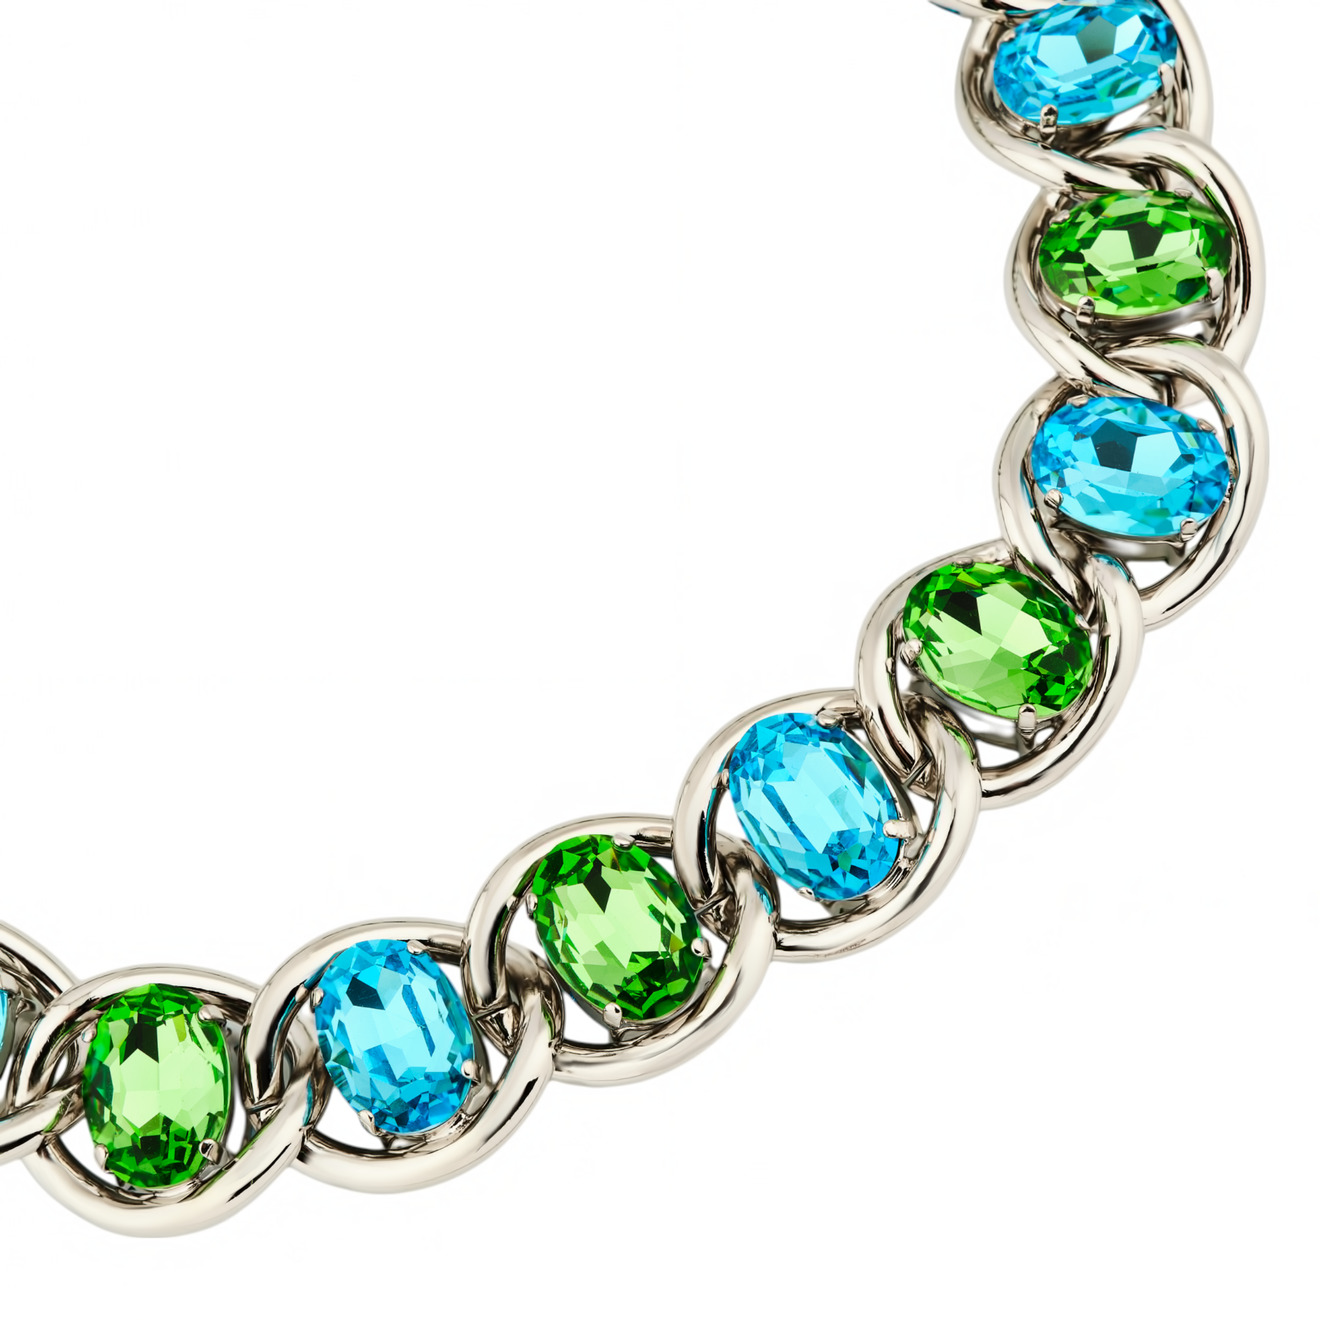 marni позолоченная цепь с зелено белым кулоном цветком Marni Колье-цепь с зелено-голубыми кристаллами